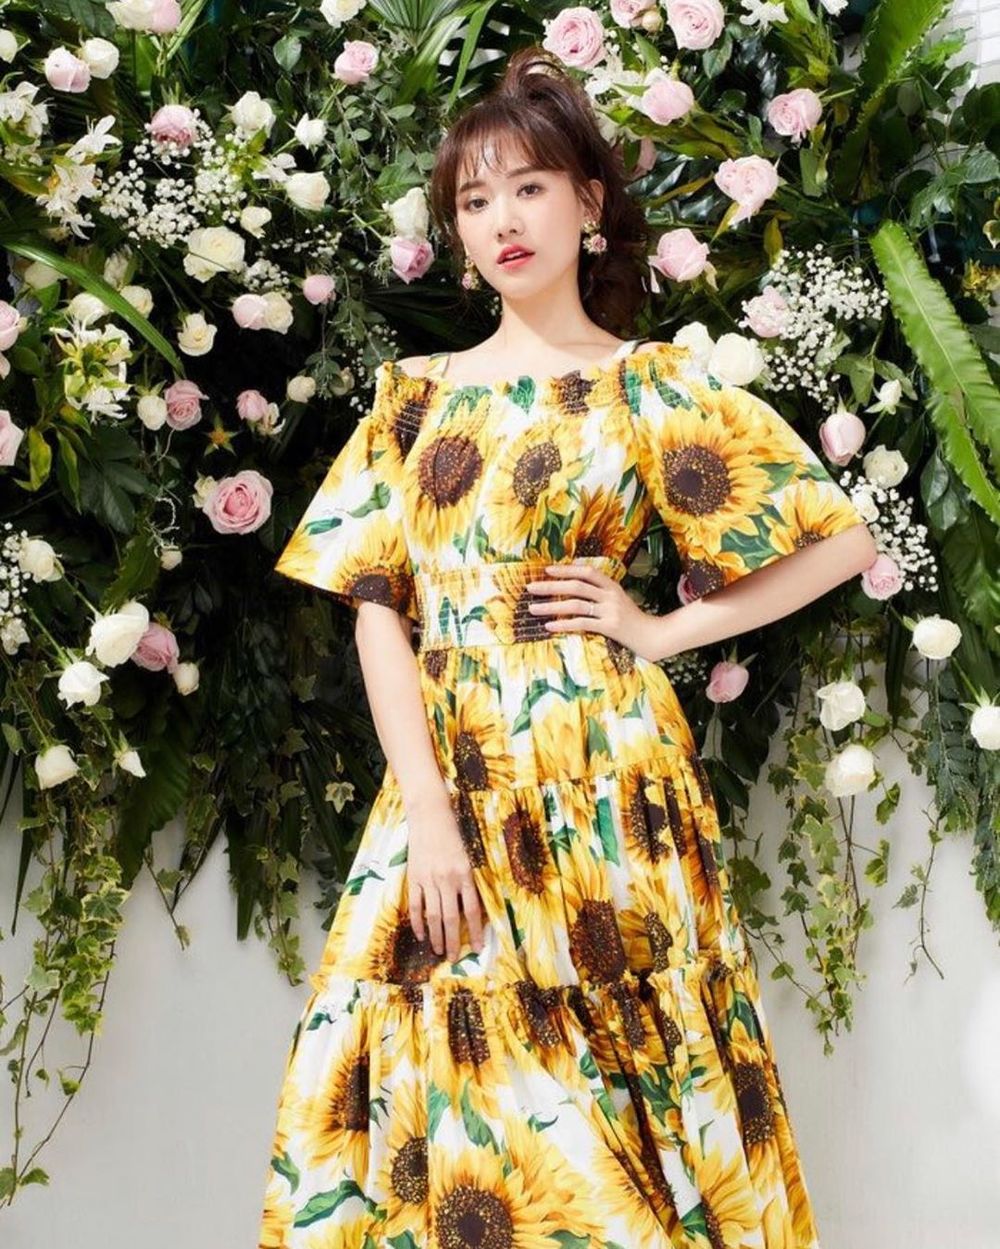  
Khi diện chiếc đầm hoa thế này, visual của Hari Won vẫn vô cùng rạng ngời. Ảnh: Instagram